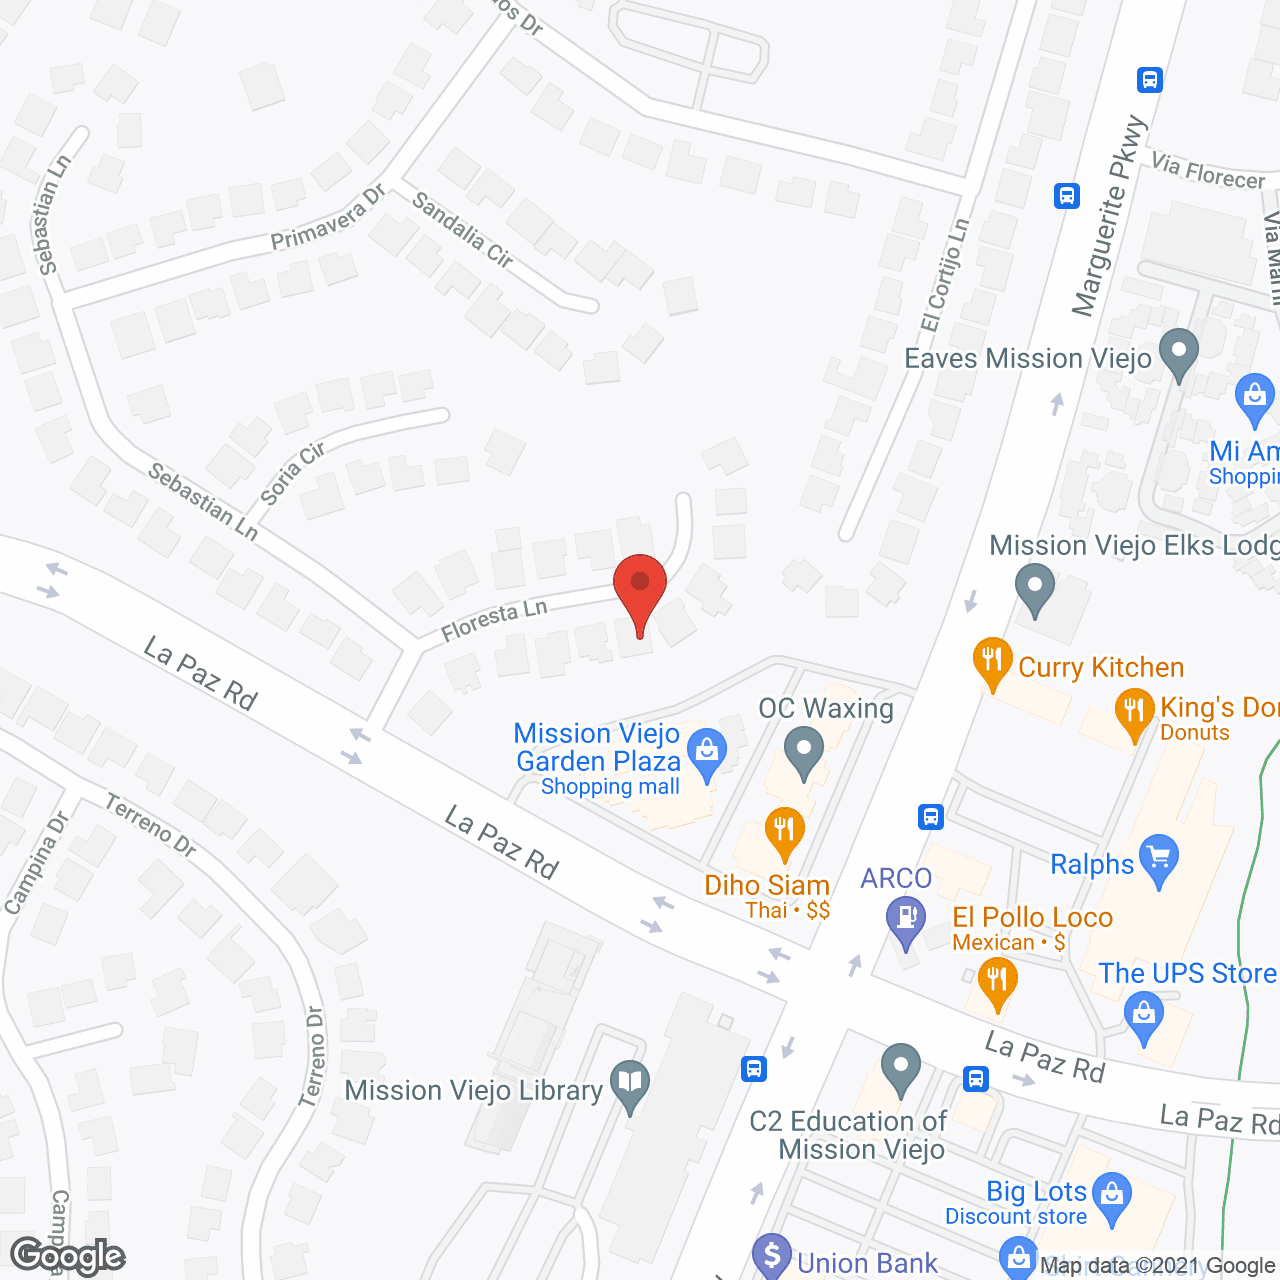 Neighborhood suites in google map